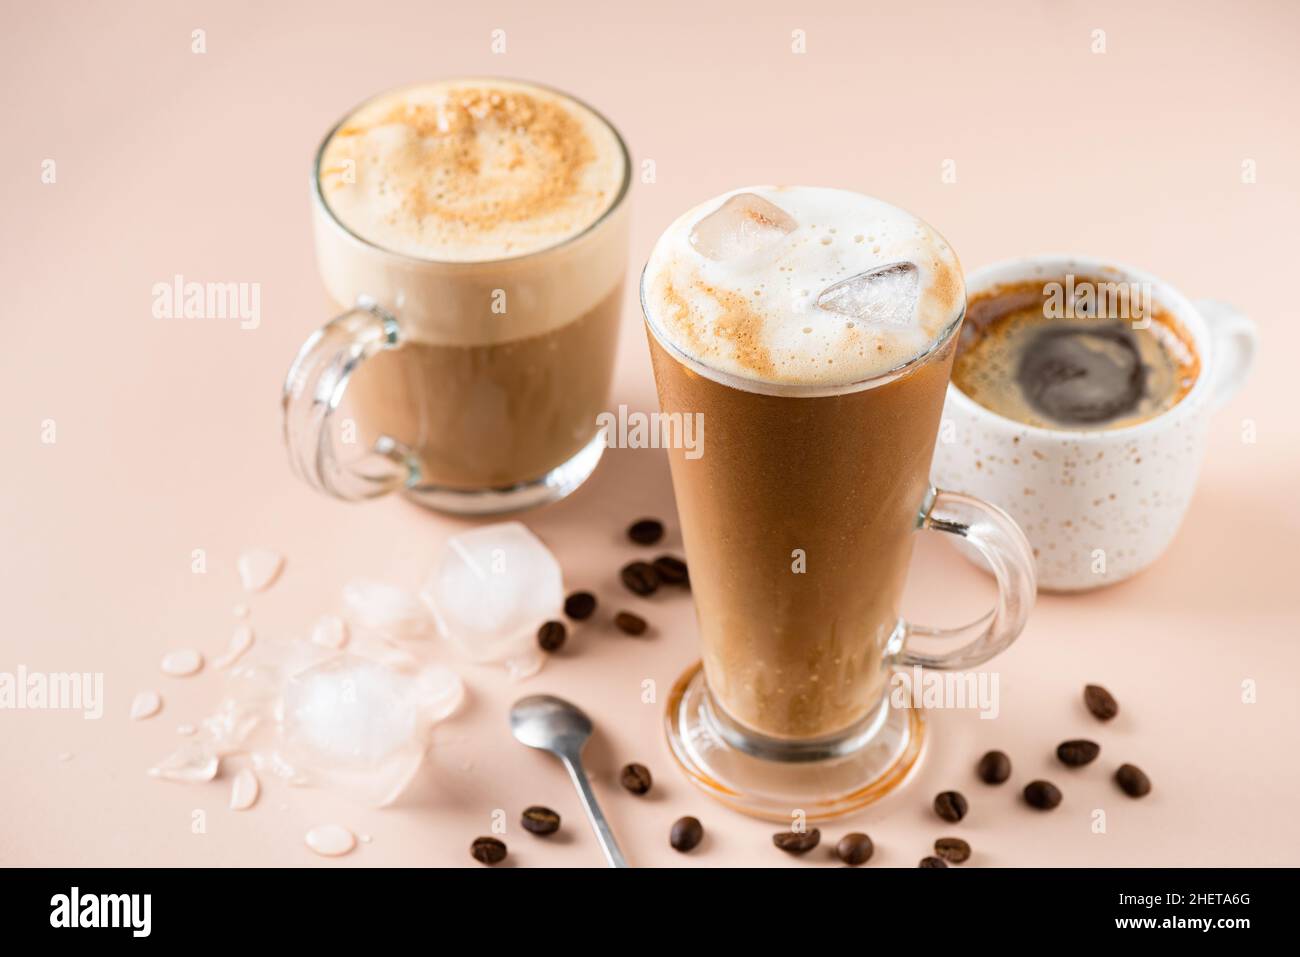 Latte à café glacé dans une tasse en verre, une tasse à espresso et un cappuccino.Diverses boissons au café Banque D'Images